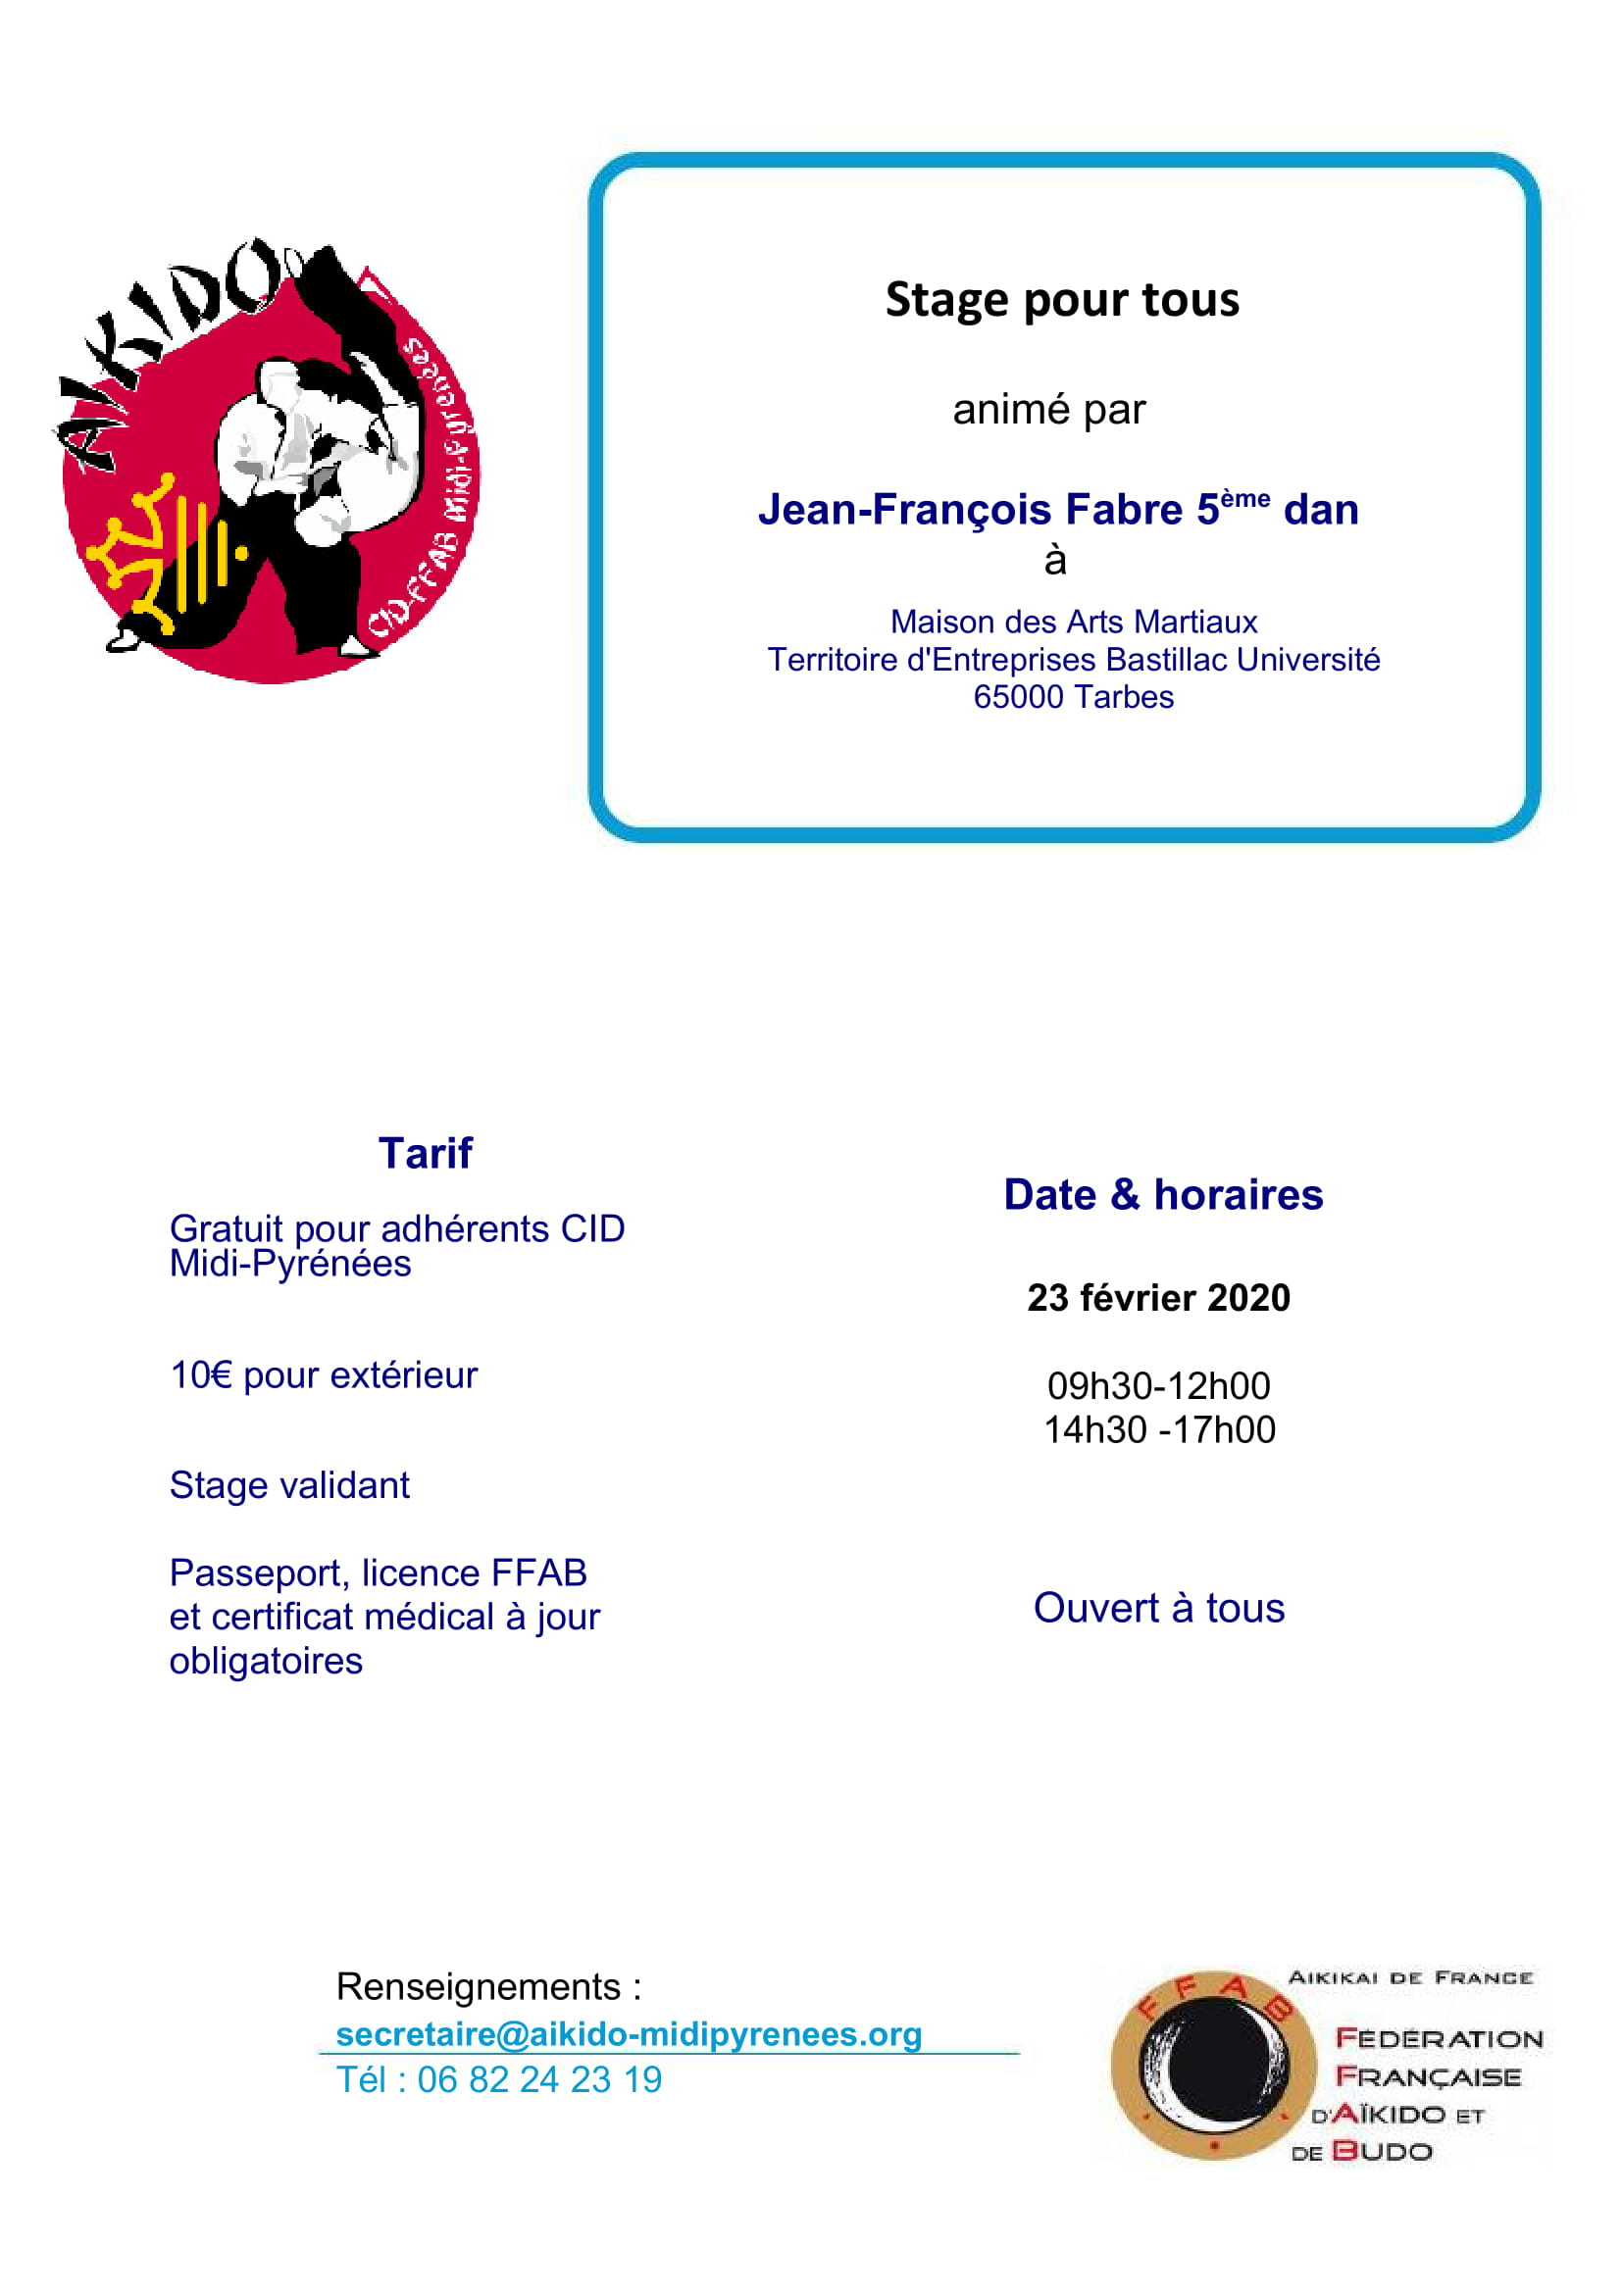 Dimanche 23 février 2020 - Stage pour tous à Tarbes animé par Jean-François Fabre 5ème dan